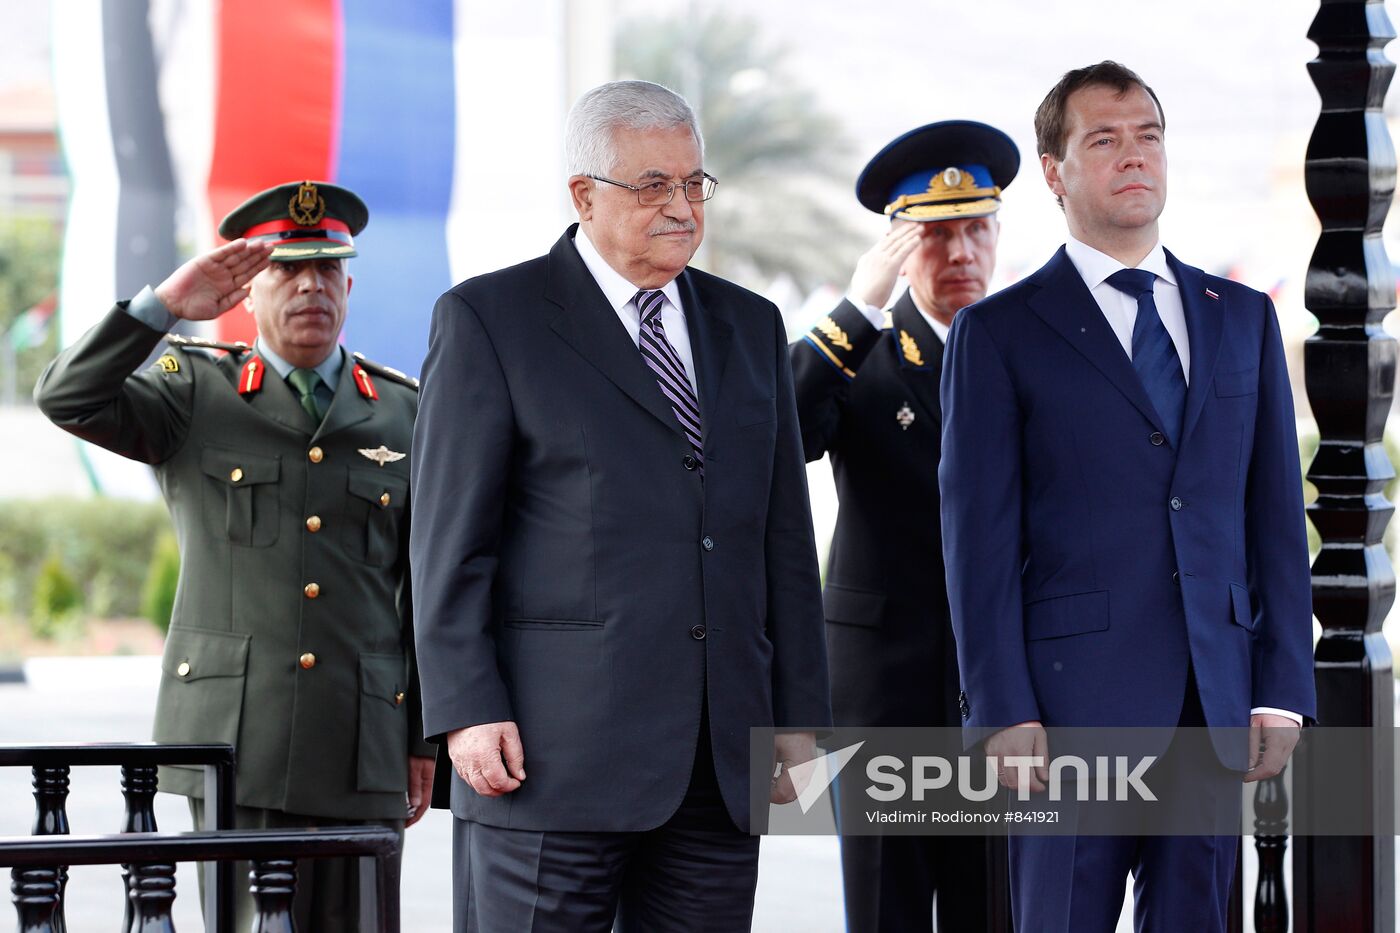 Dmitry Medvedev visits Palestinian autonomy